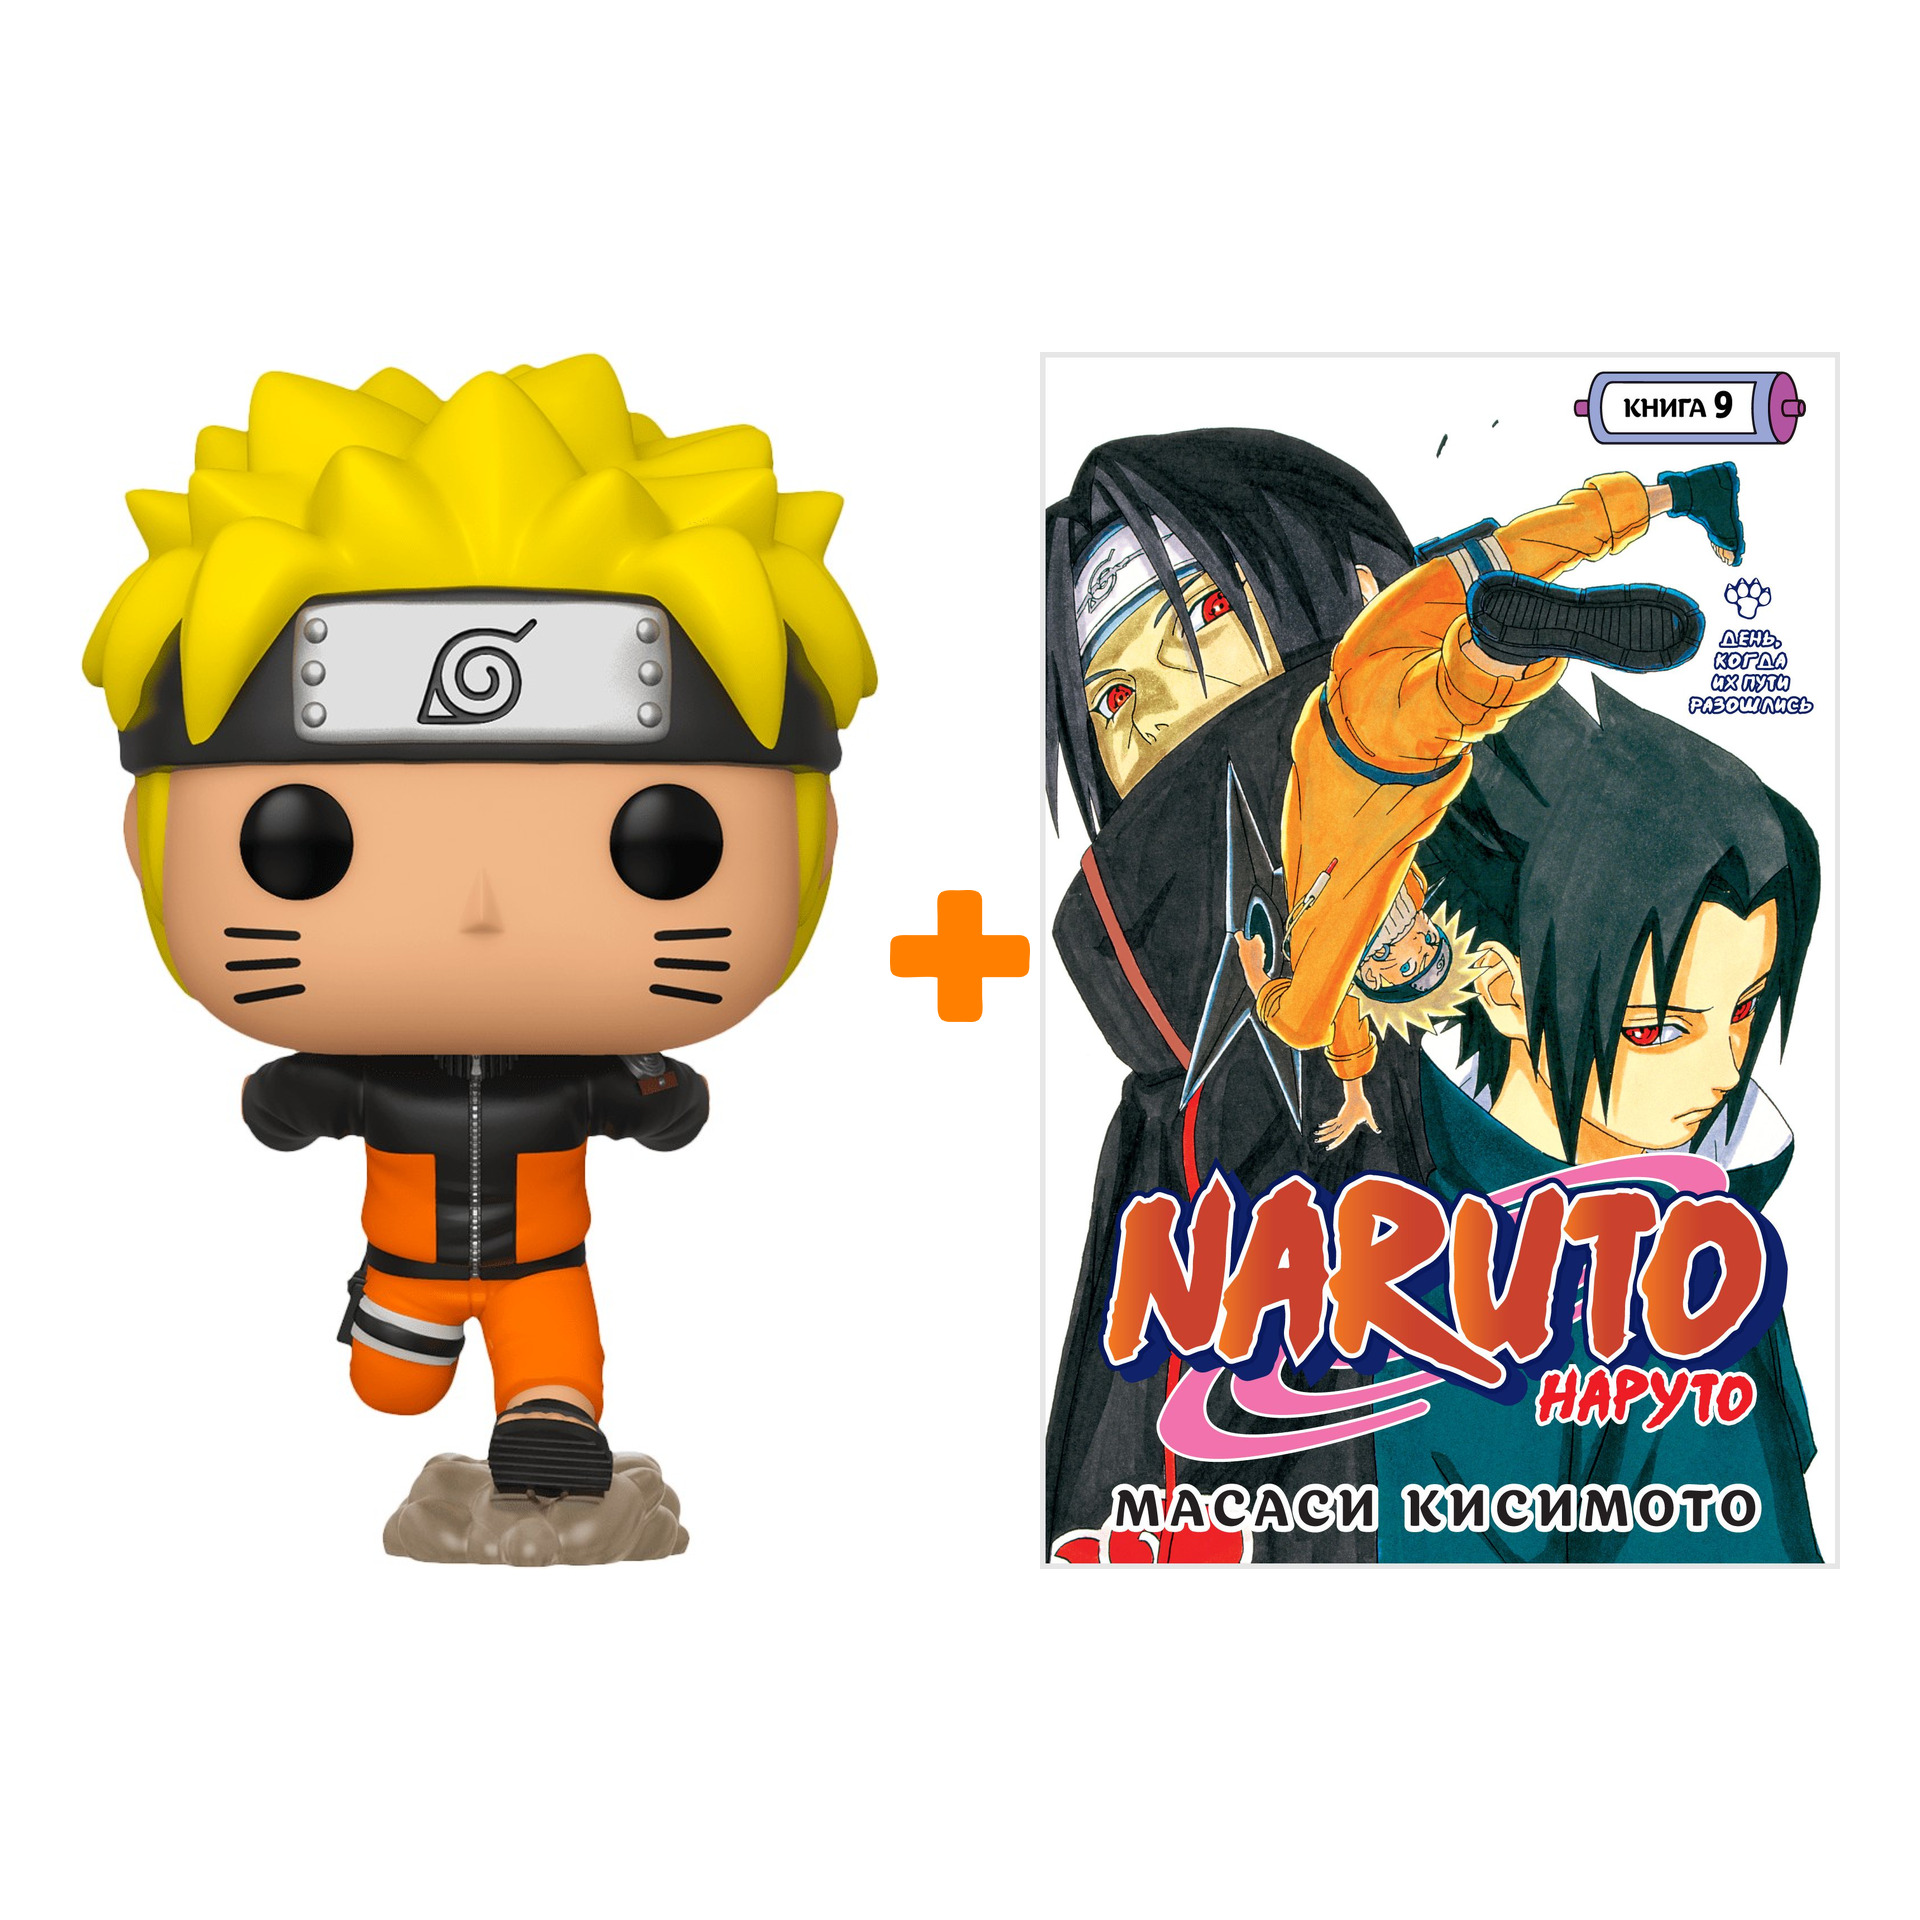 Набор Naruto Shippuden фигурка Naruto Uzumaki Running + манга Naruto 9 День, когда их пути разошлись